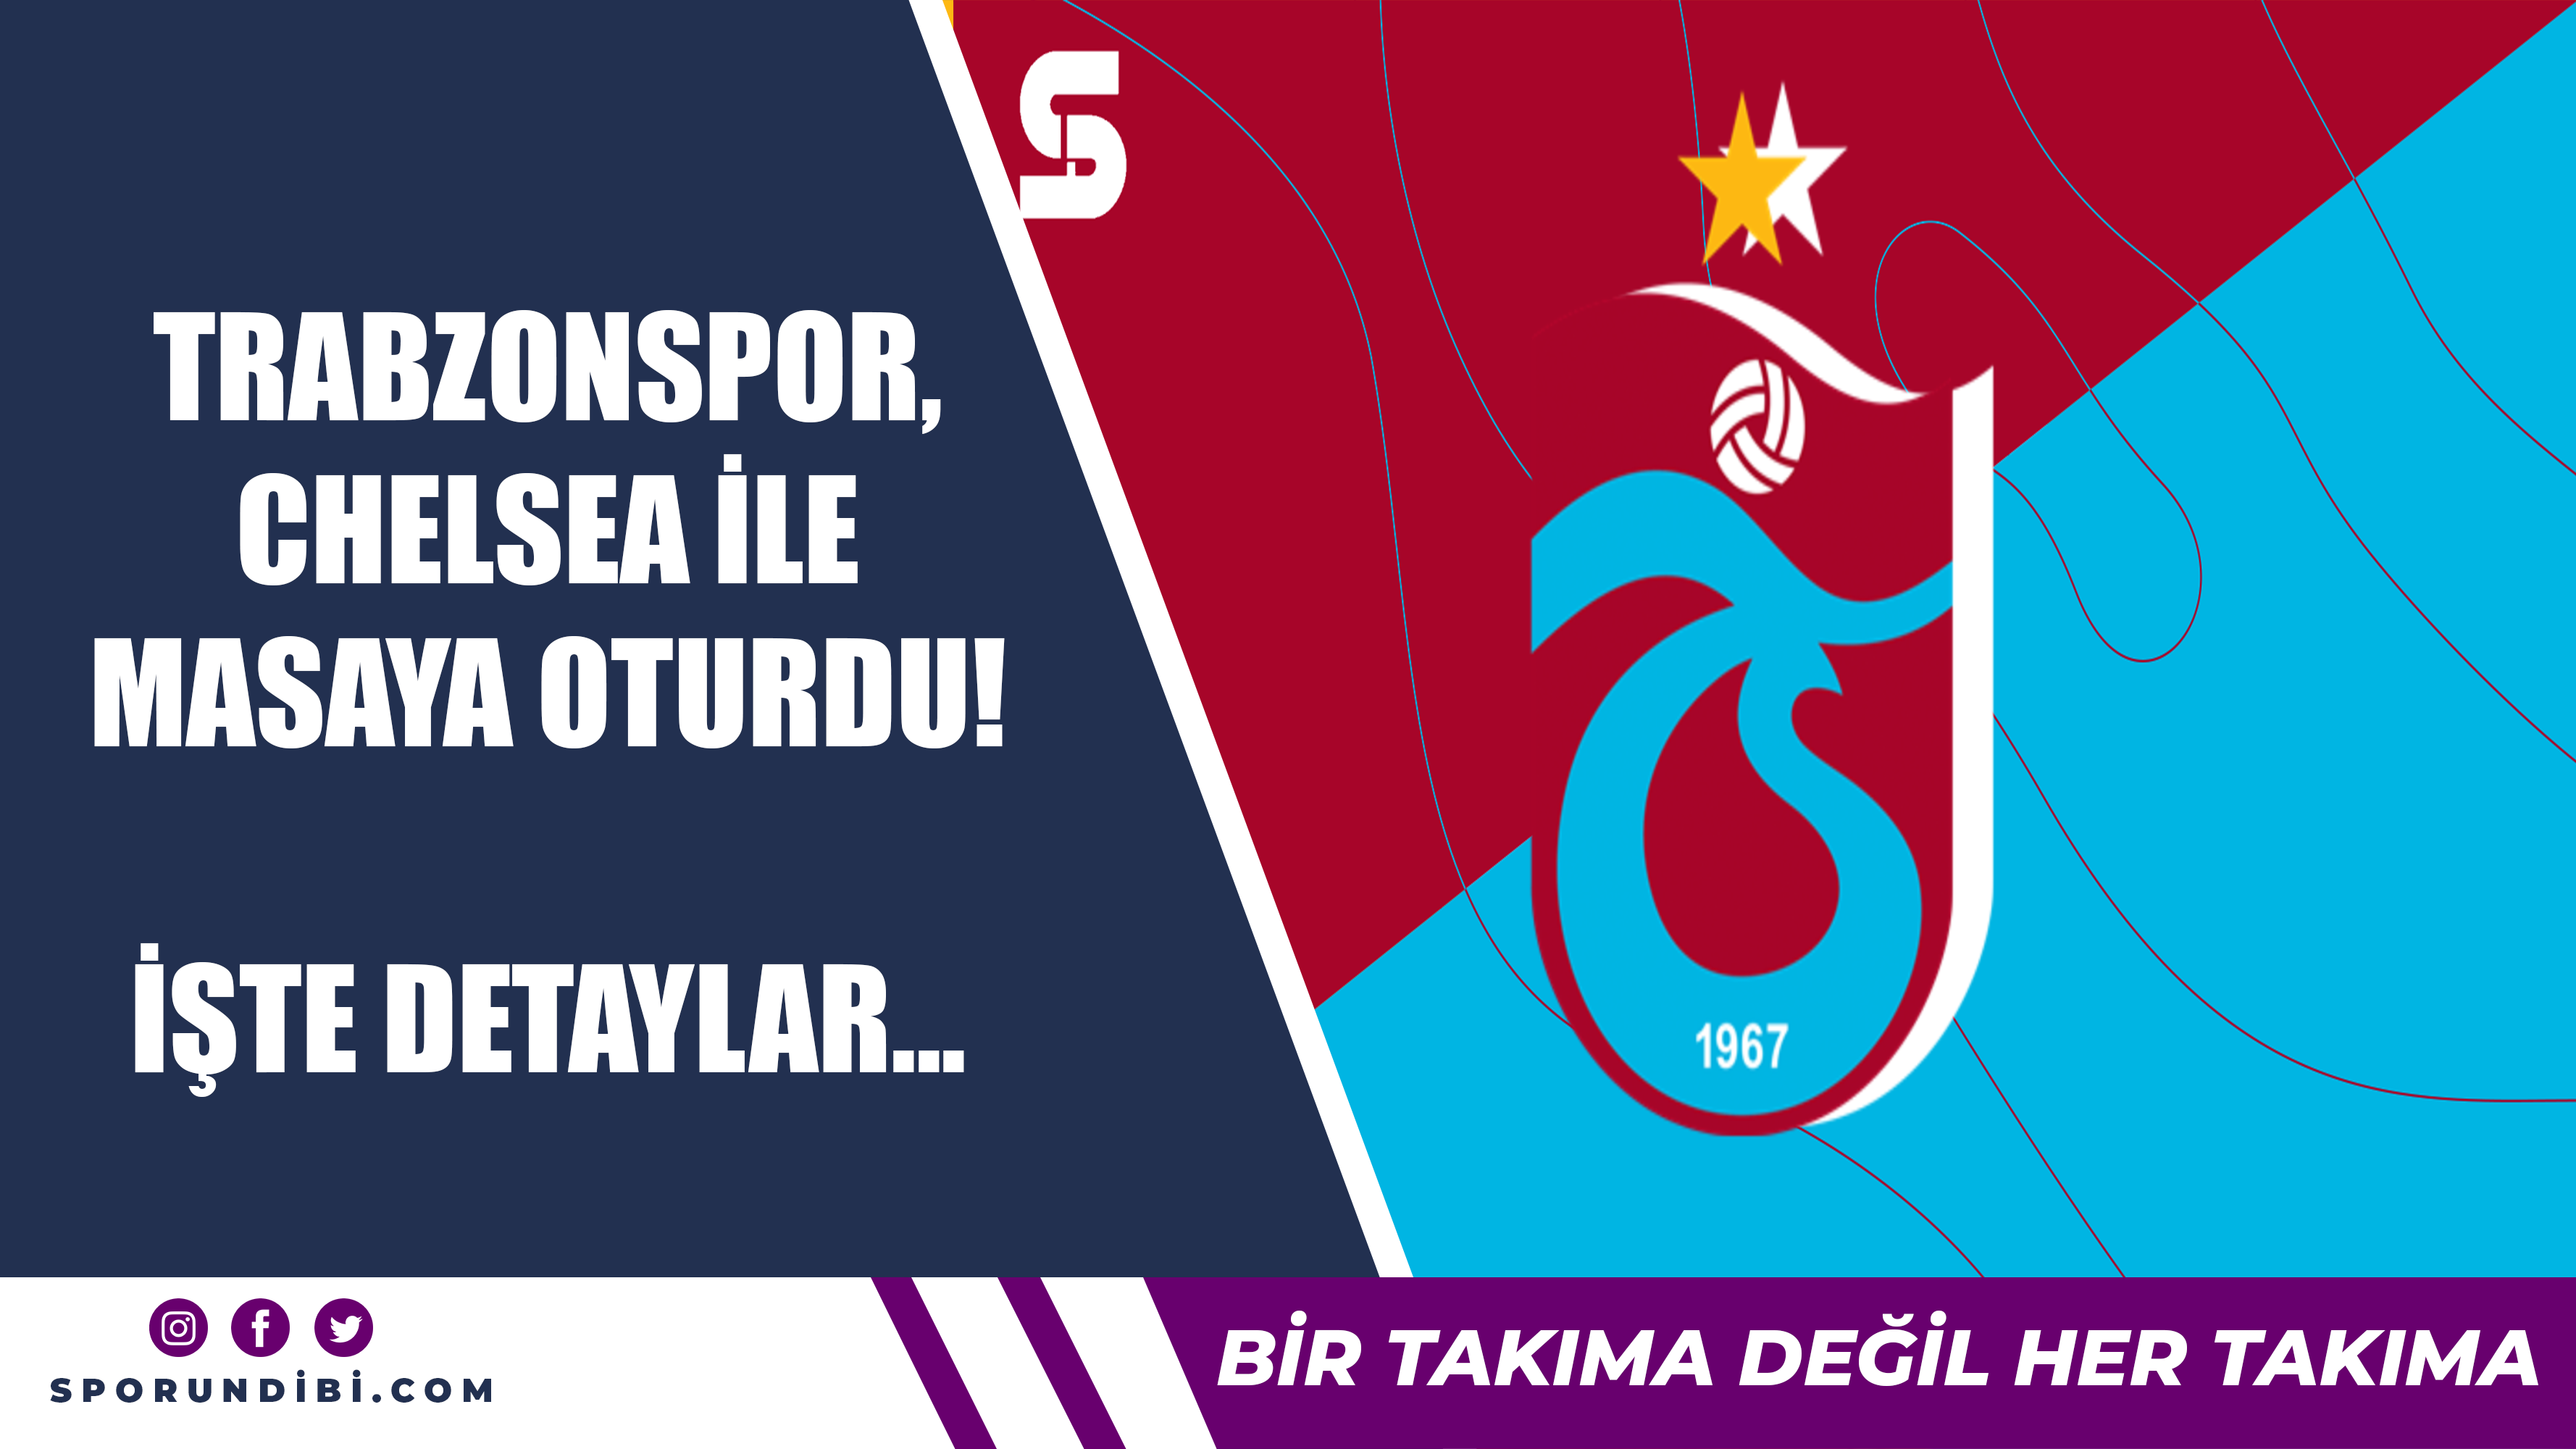 Trabzonspor, Chelsea ile masaya oturdu! İşte detaylar...